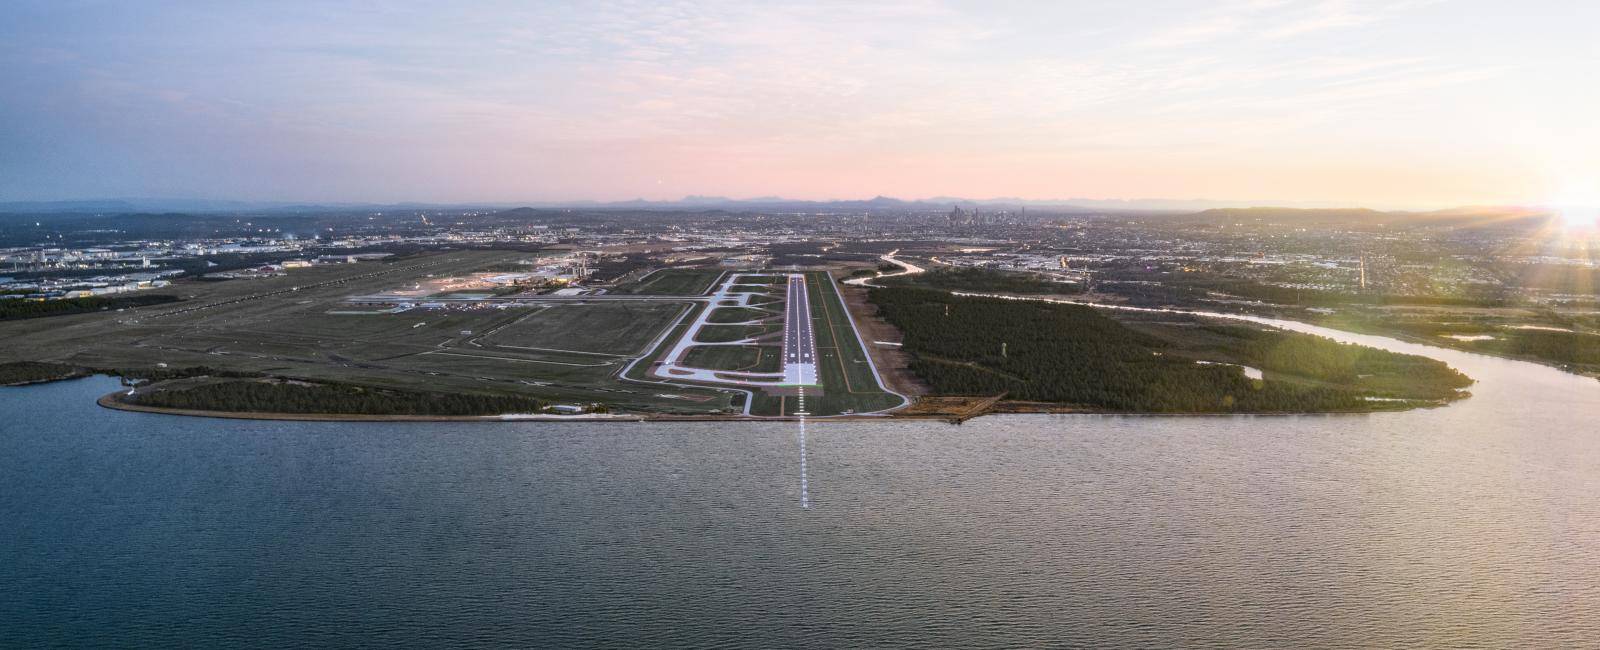 Brisbane new runway render